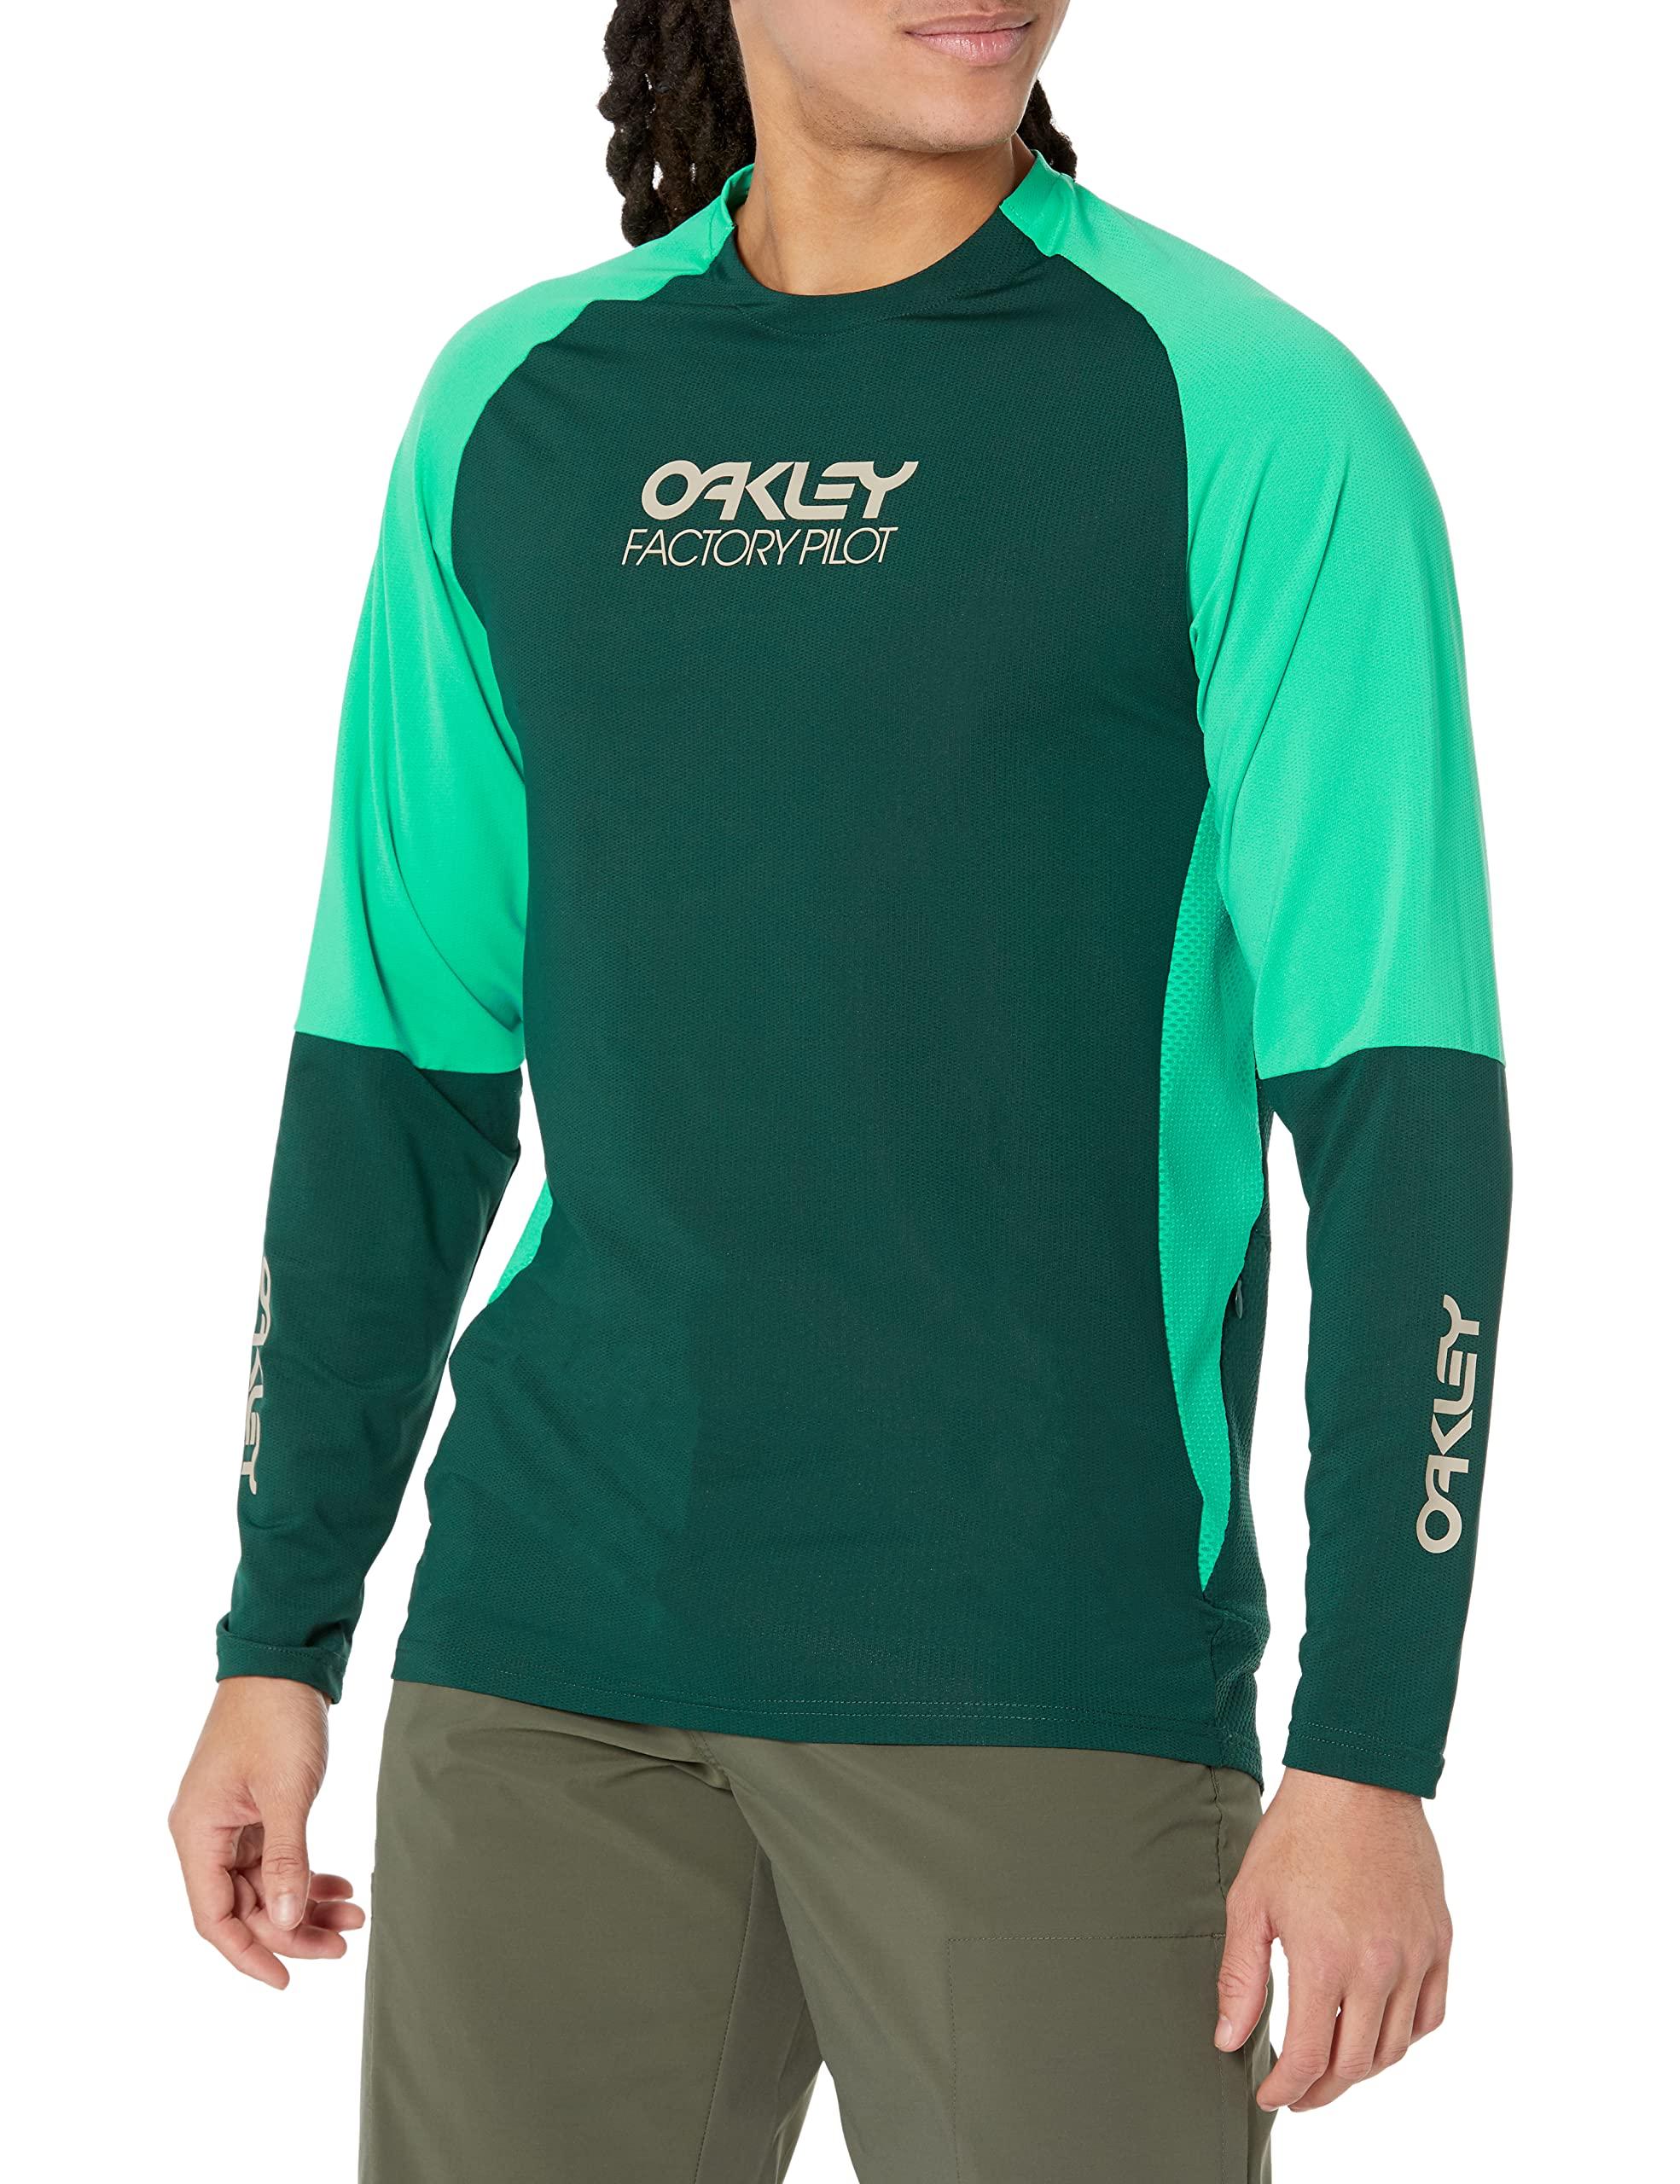 Oakley Factory Pilot Mtb Long Sleeve Jersey Ii in Green | Lyst